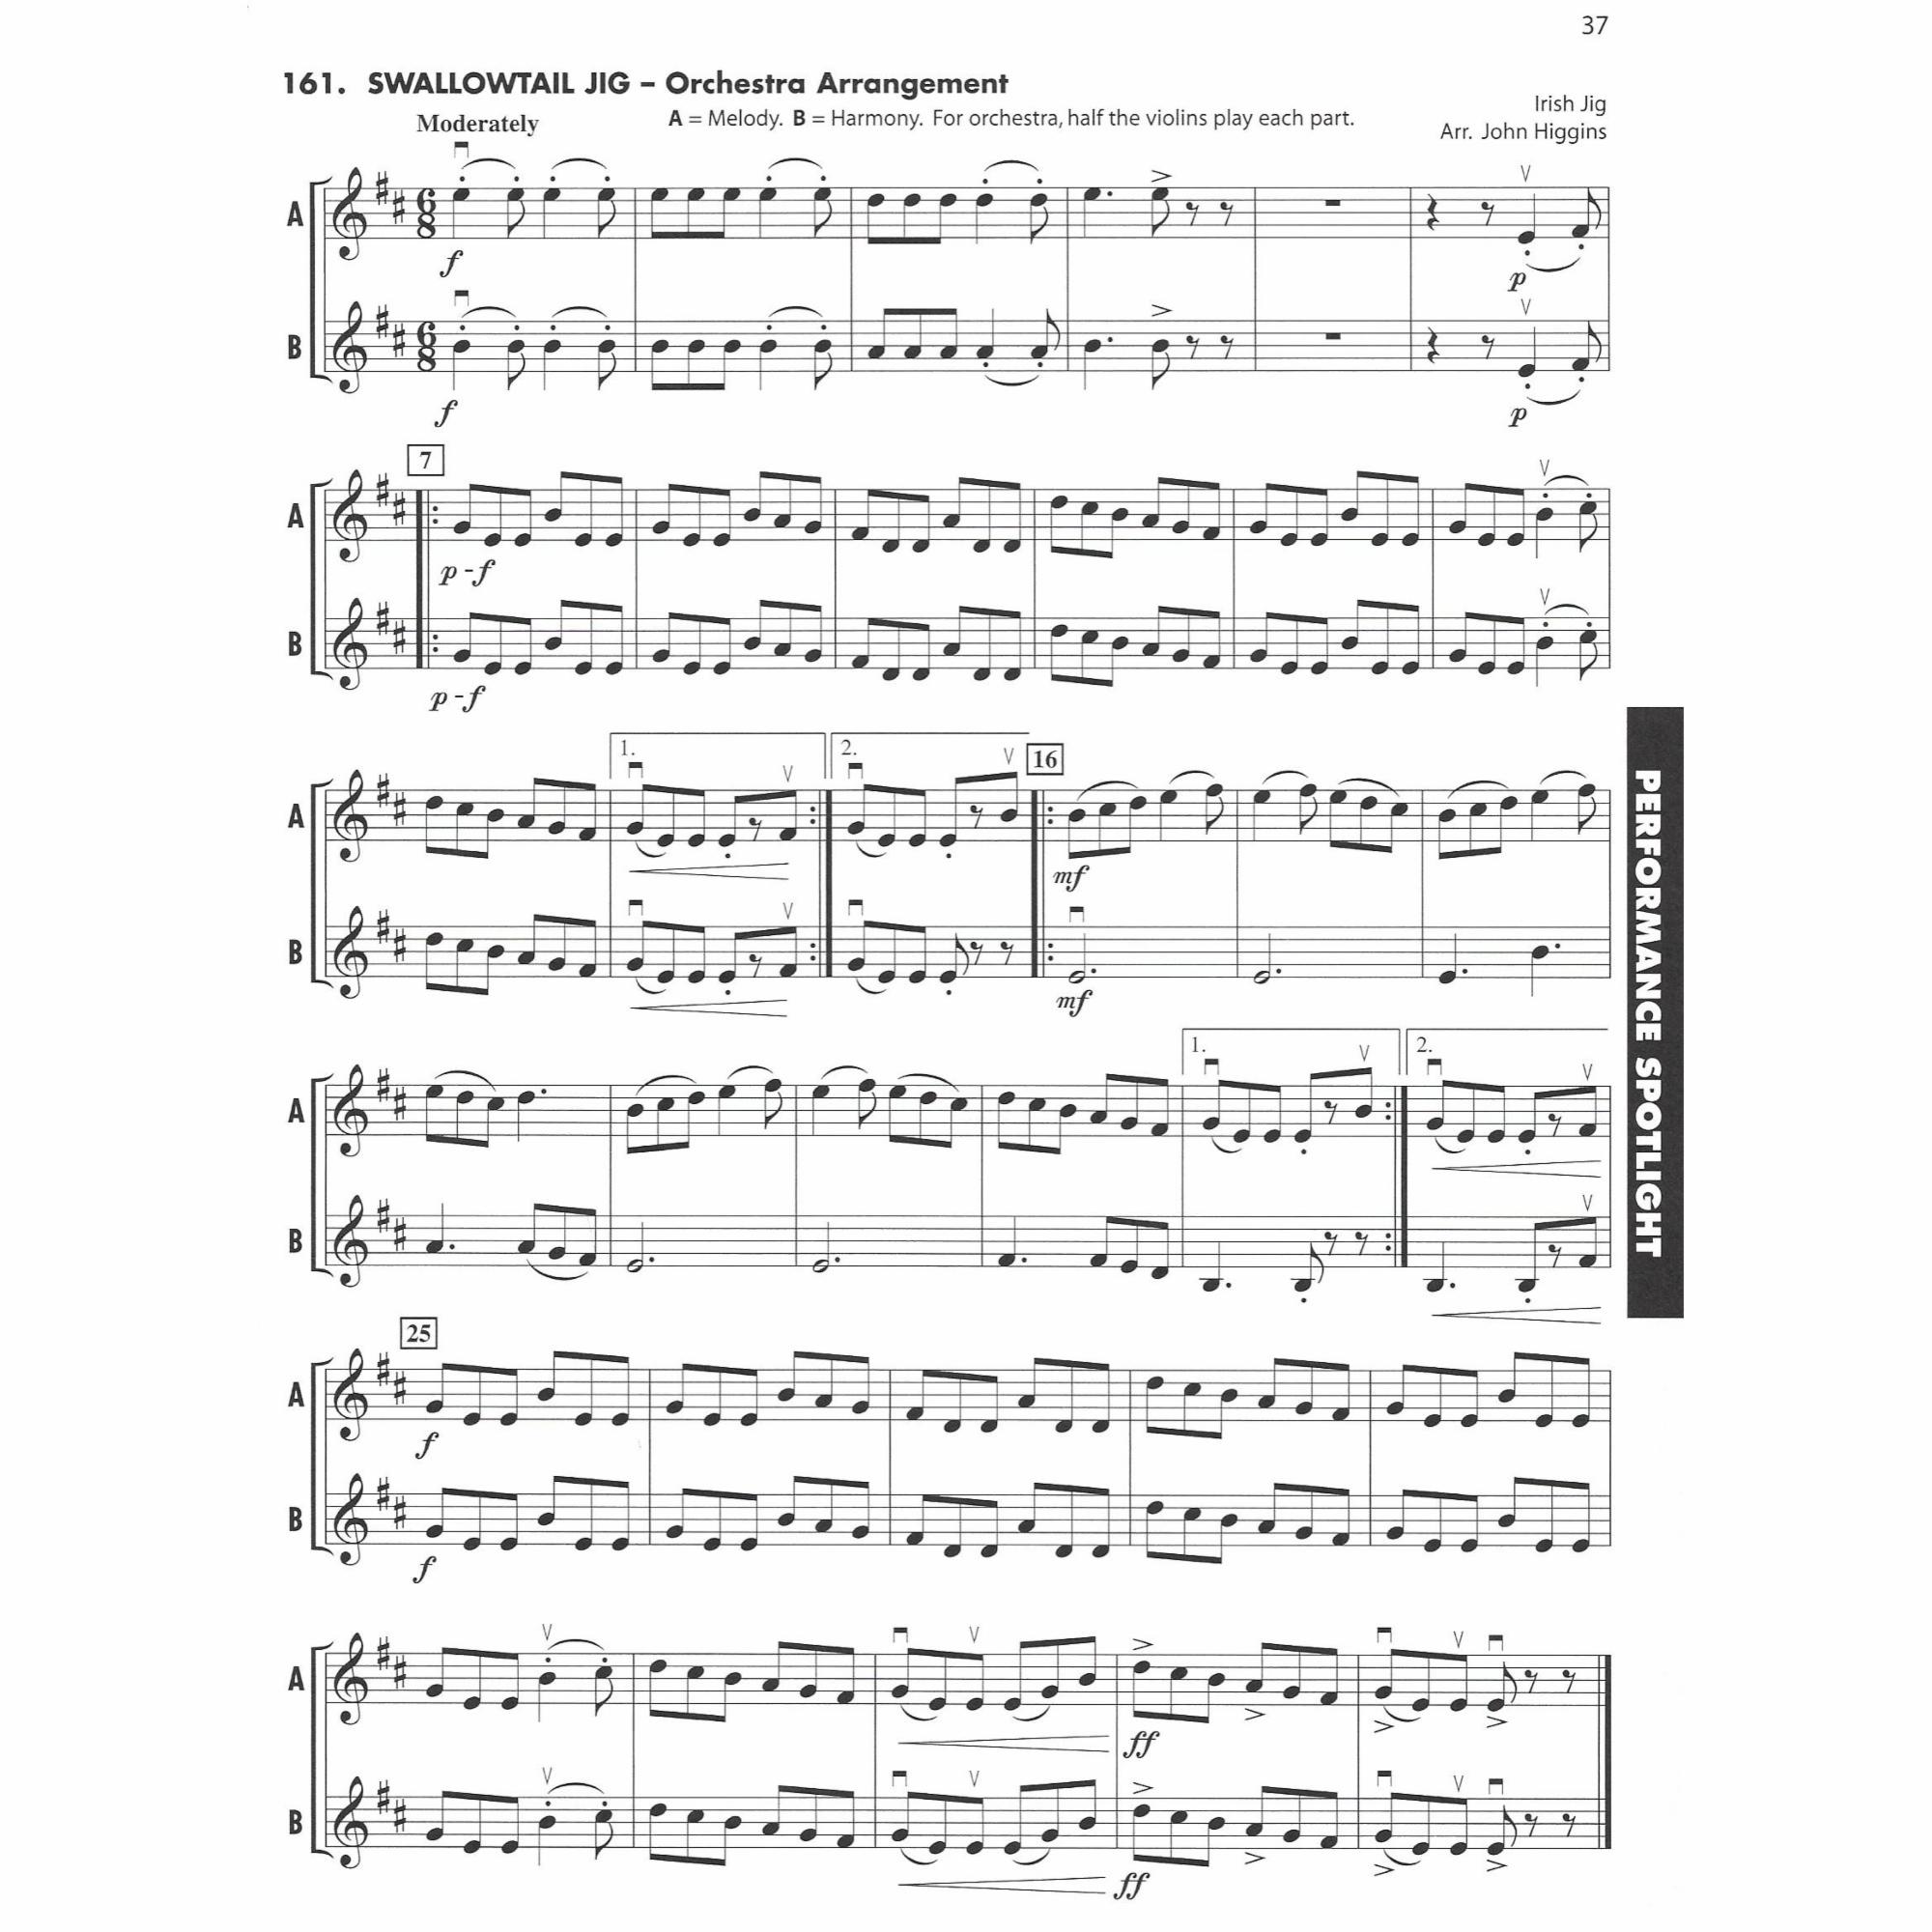 Sample: Violin, Pg. 37